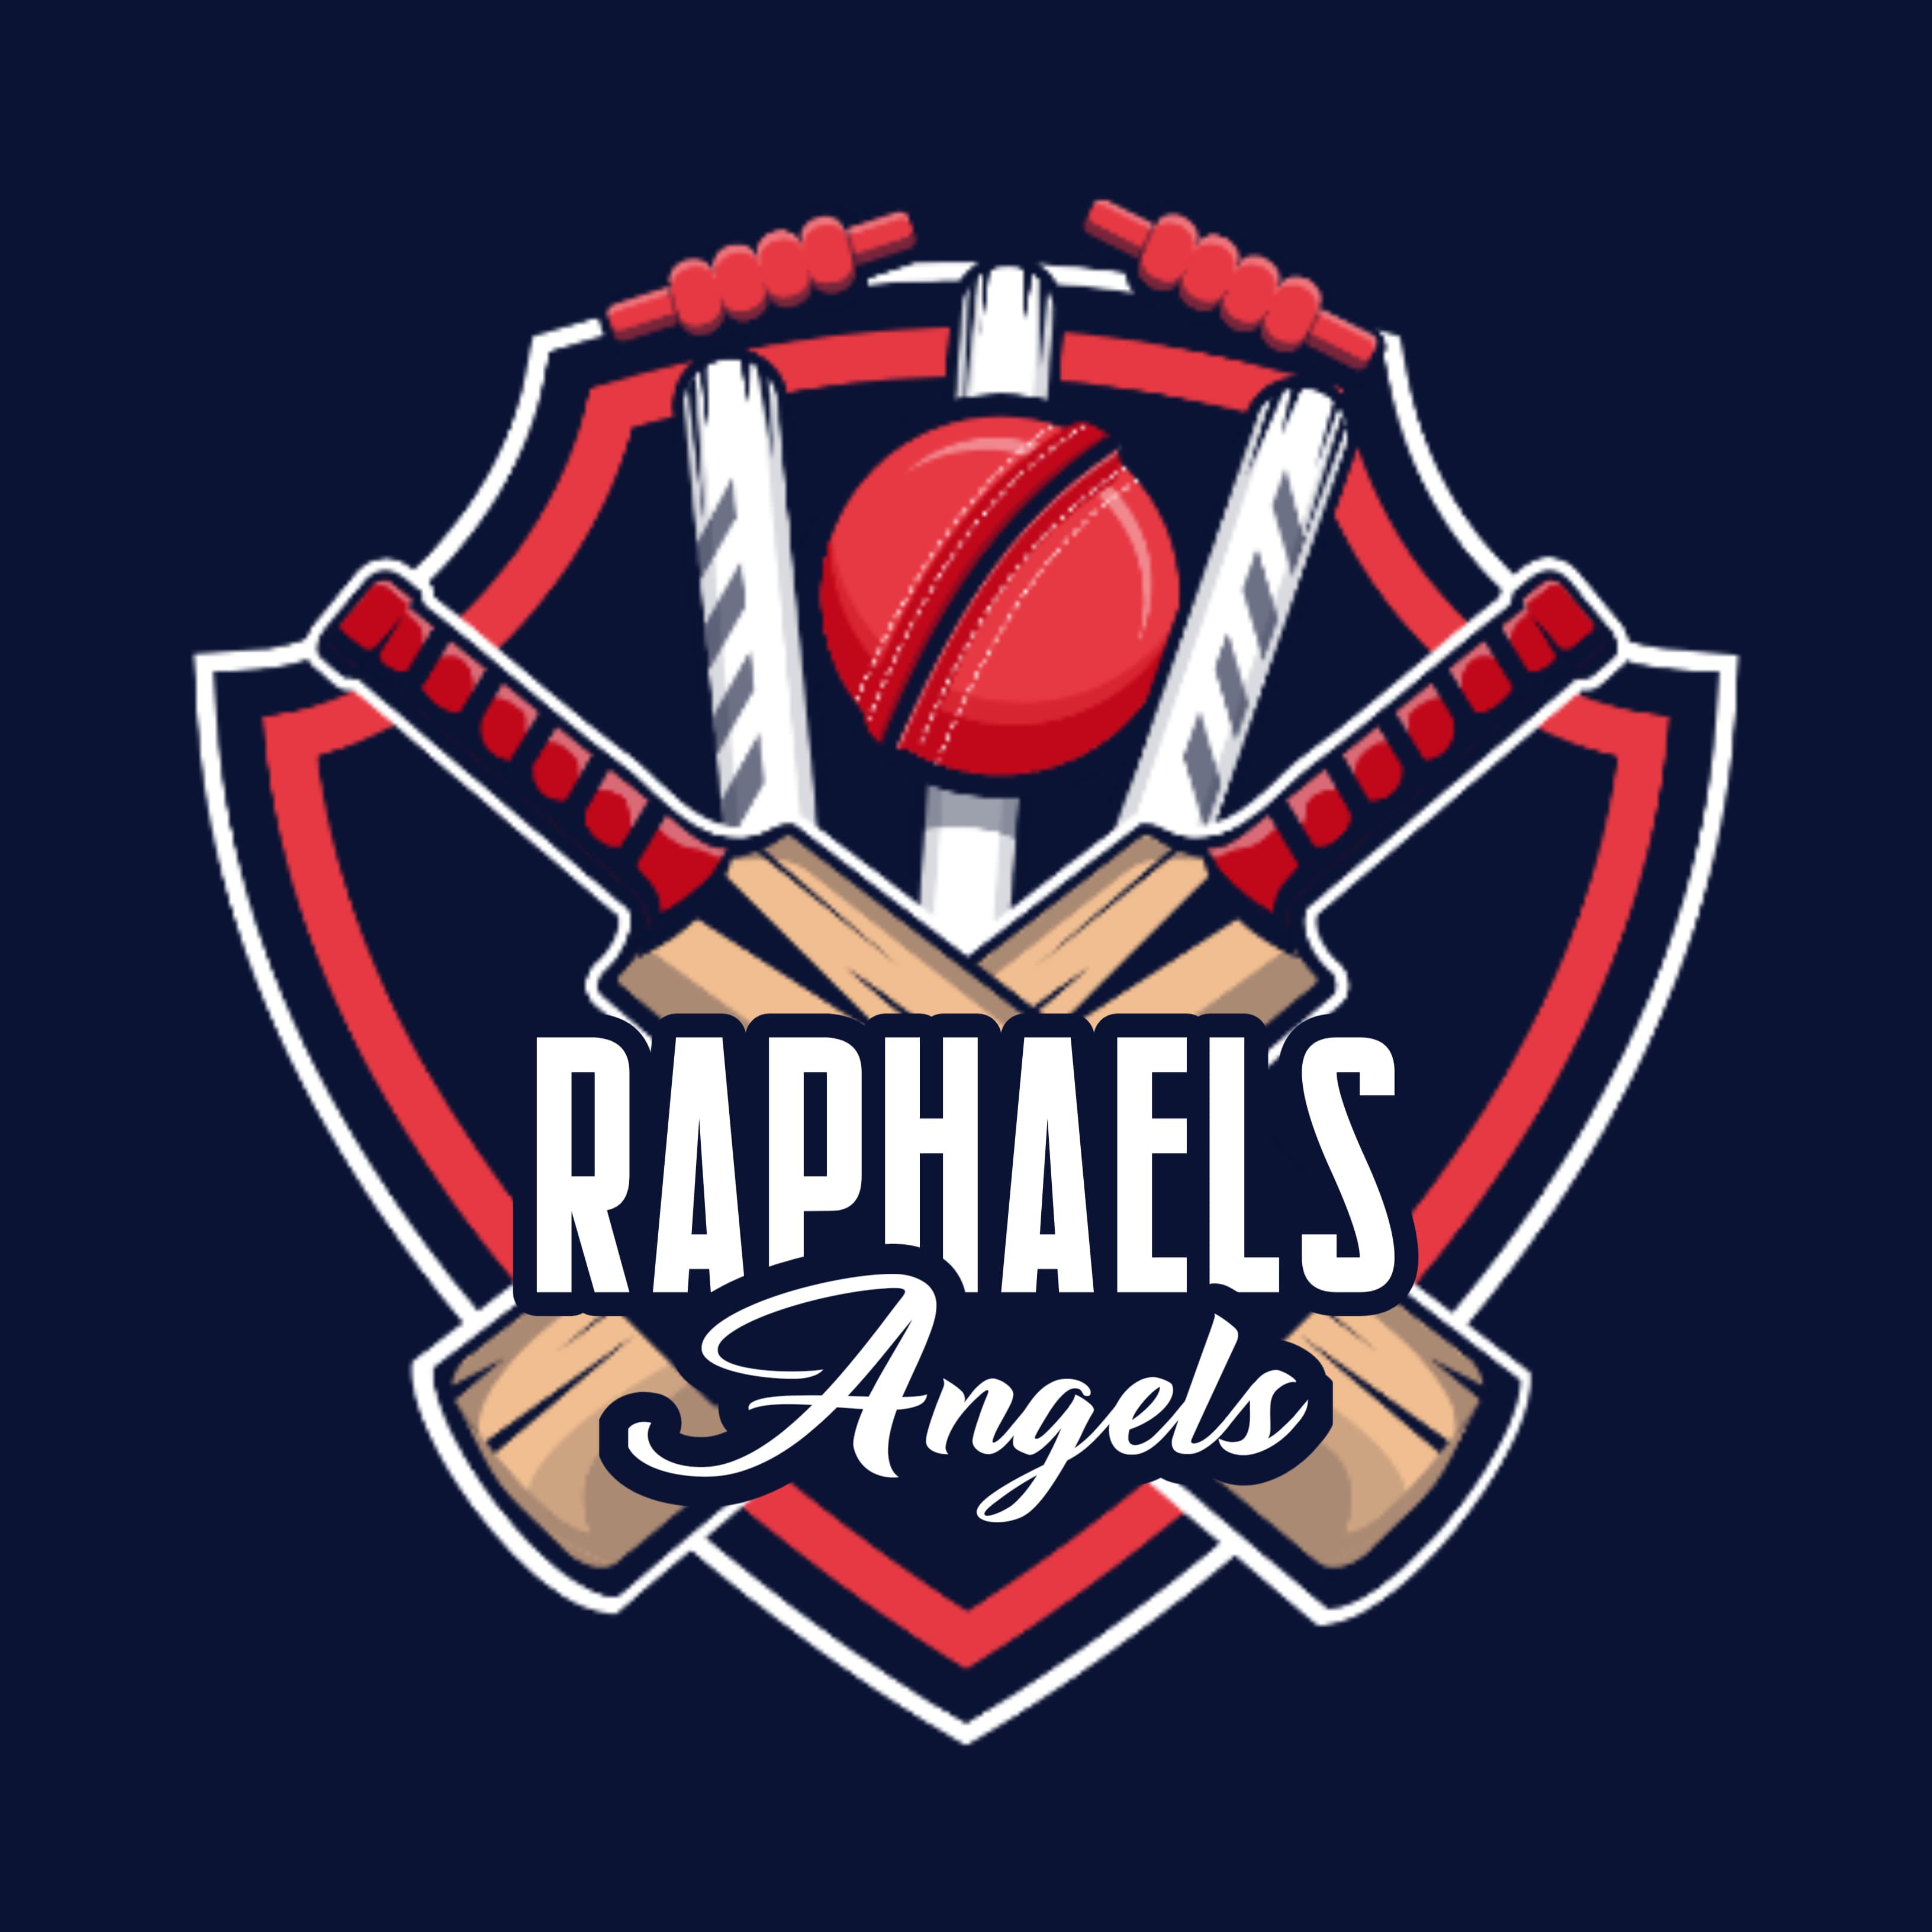 RAPHAEL S ANGELS BELA